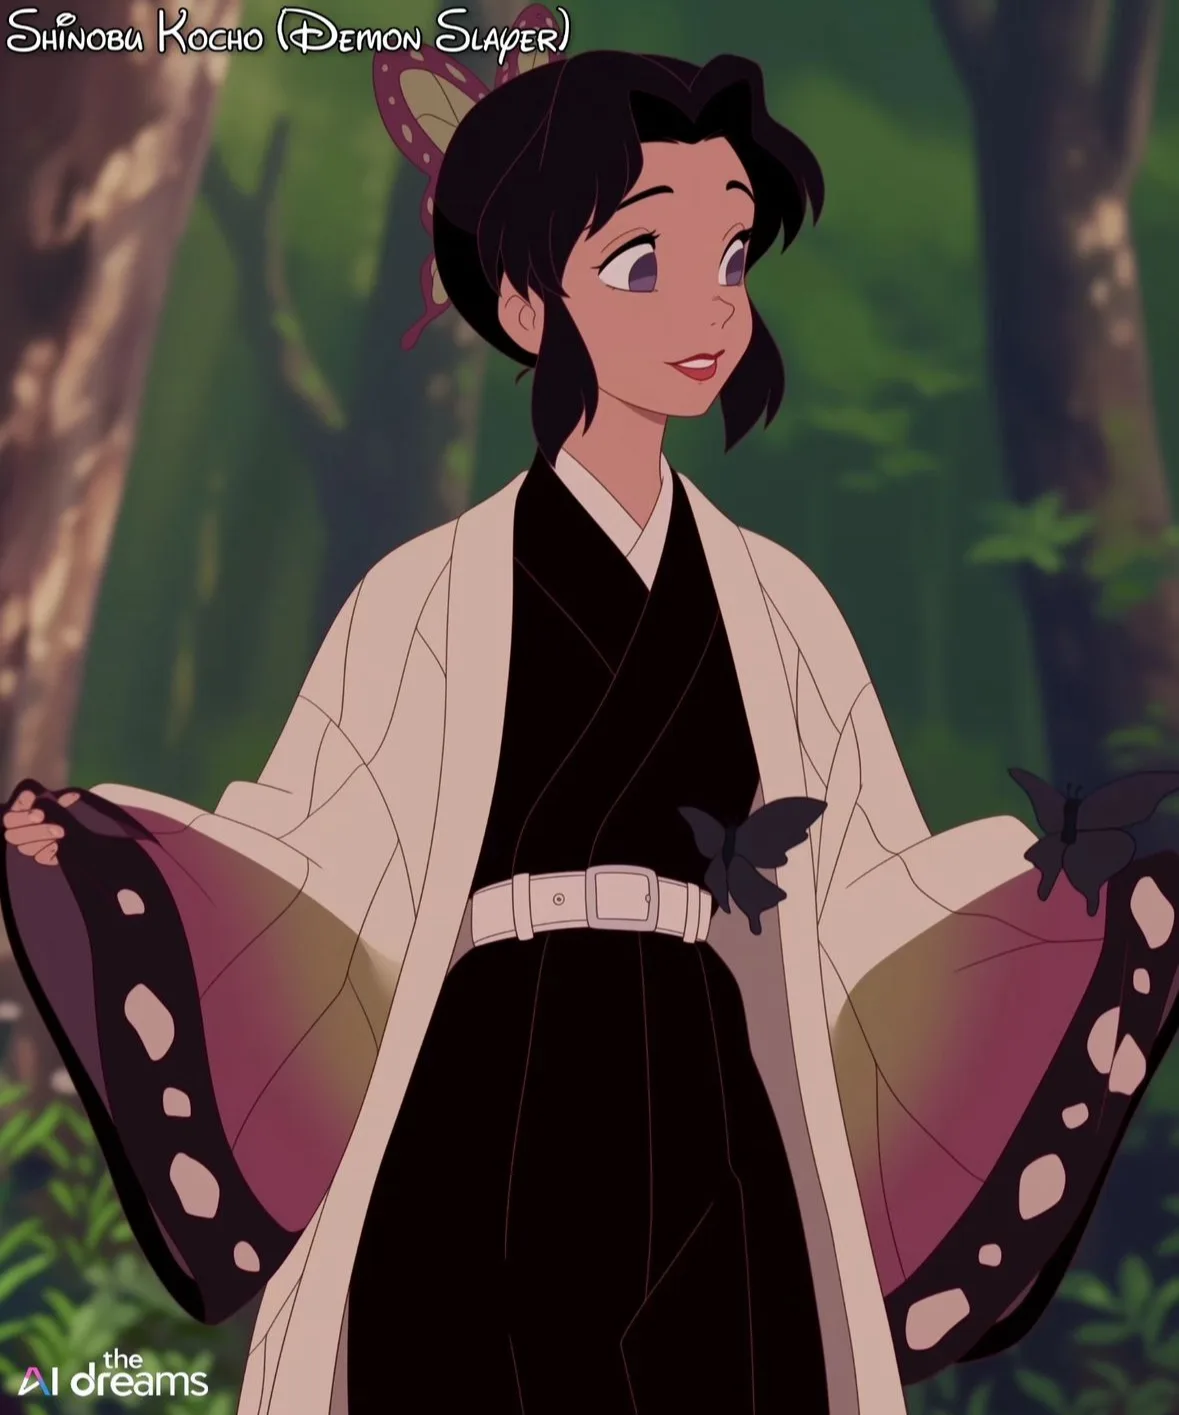 ตัวละคร อนิเมะญี่ปุ่นเรื่องดัง การ์ตูนดิสนีย์ยุคคลาสสิก Disney Aiart